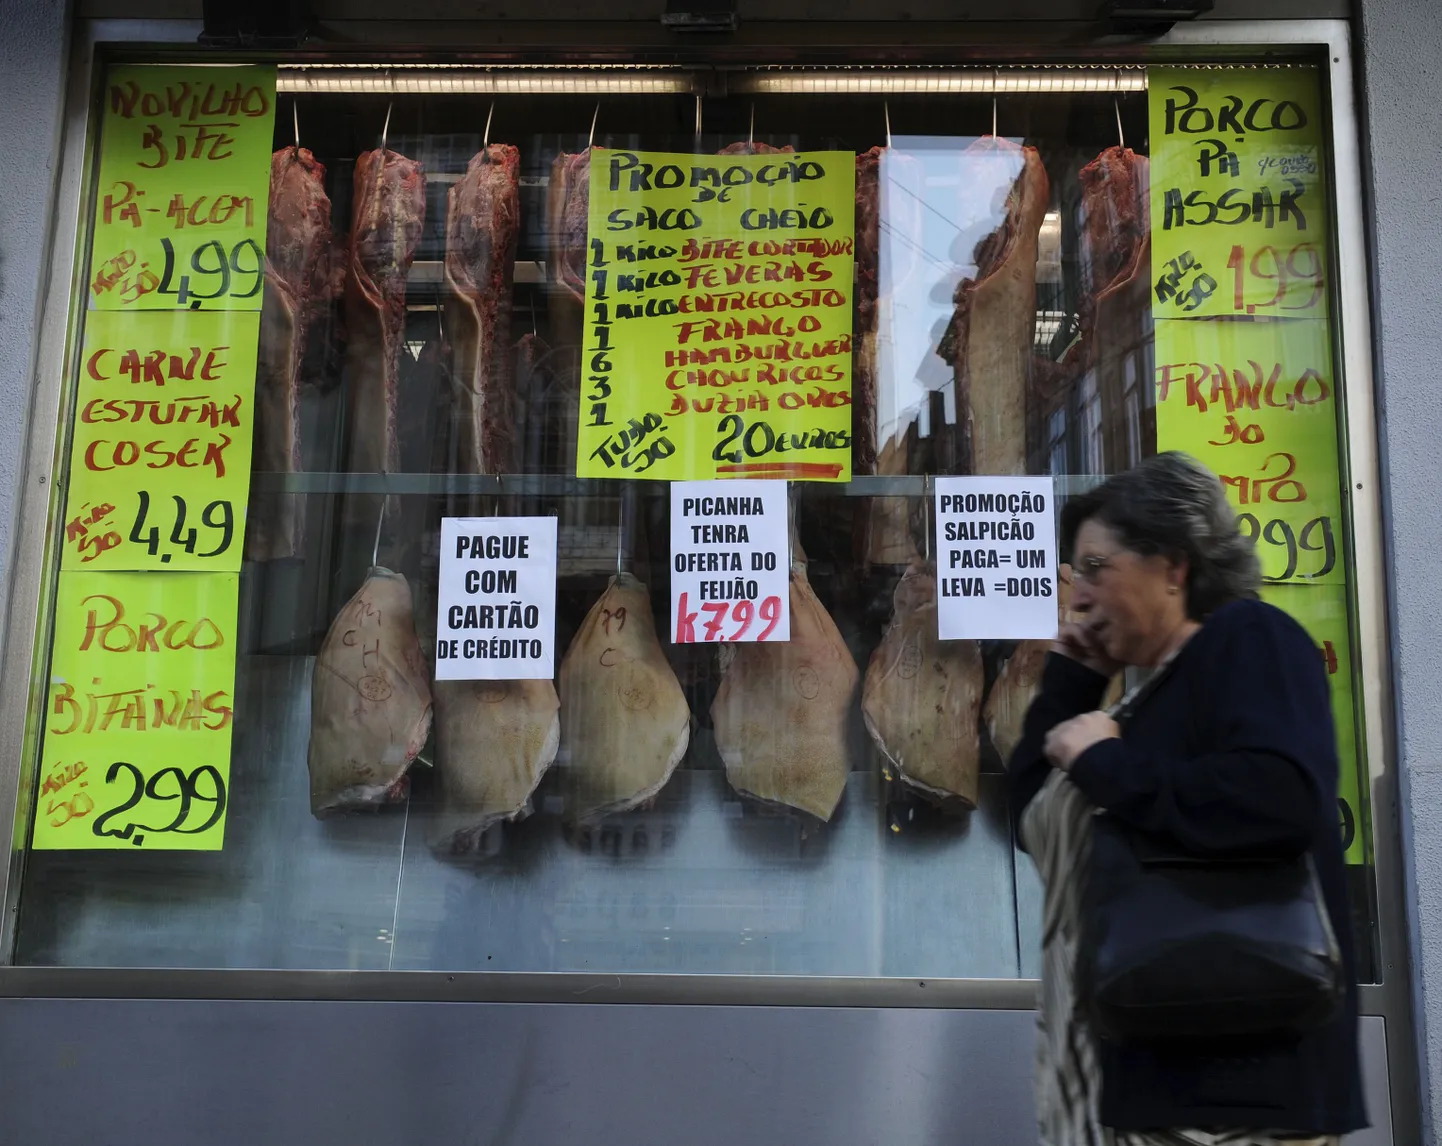 Лавка в португальском городе Порту. Вывески обещают покупателям скидки и возможность платить карточкой.